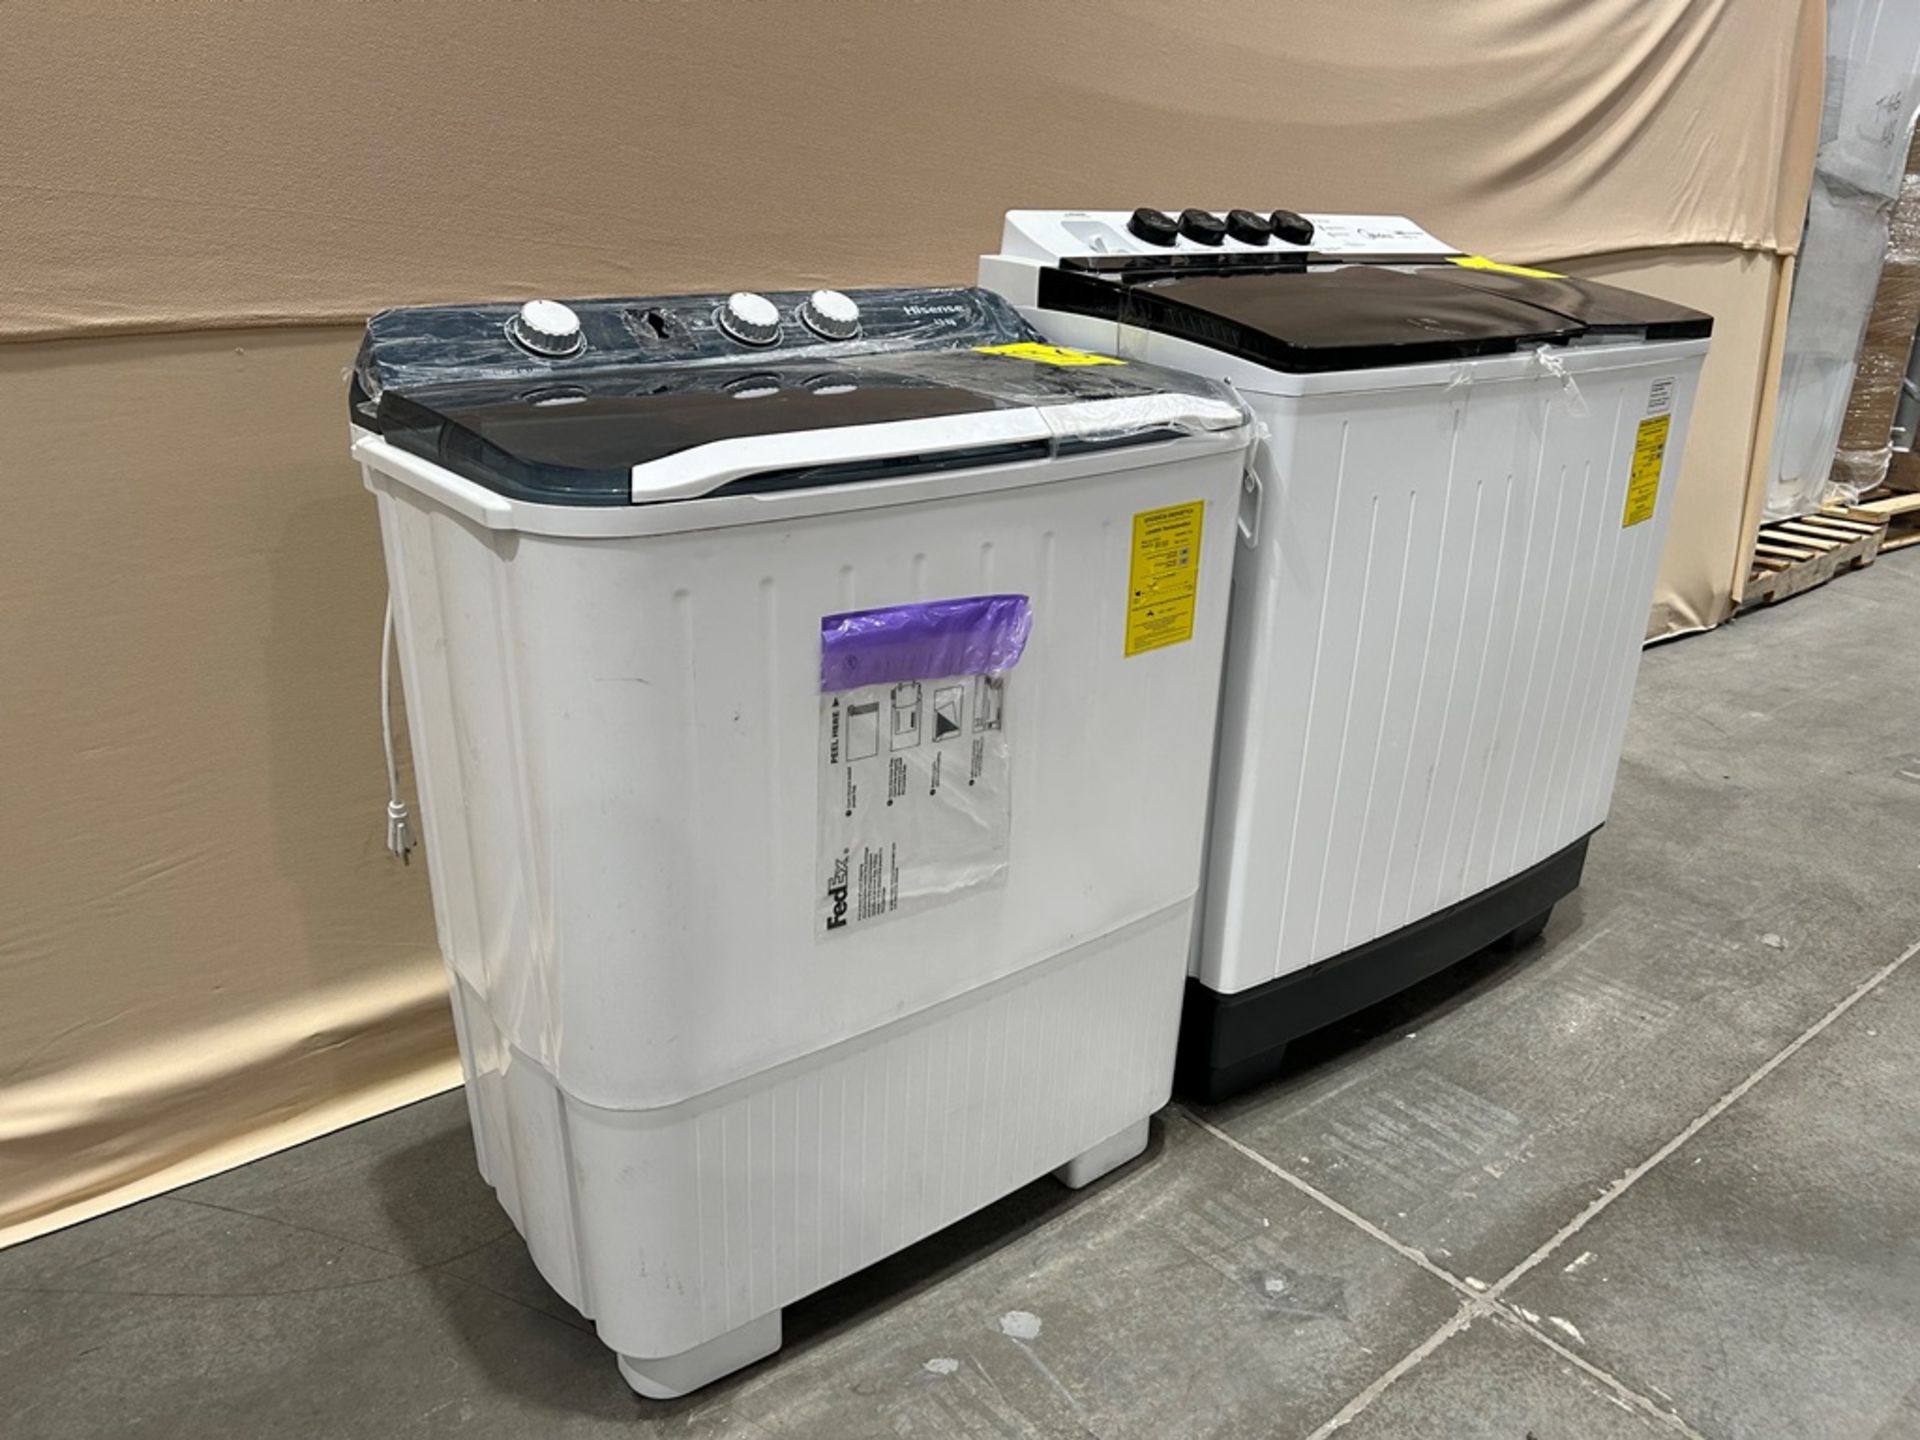 Lote de 2 lavadoras contiene: 1 Lavadora de 19 KG Marca MIDEA, Modelo MT100W190, Serie 01241, Color - Image 3 of 6